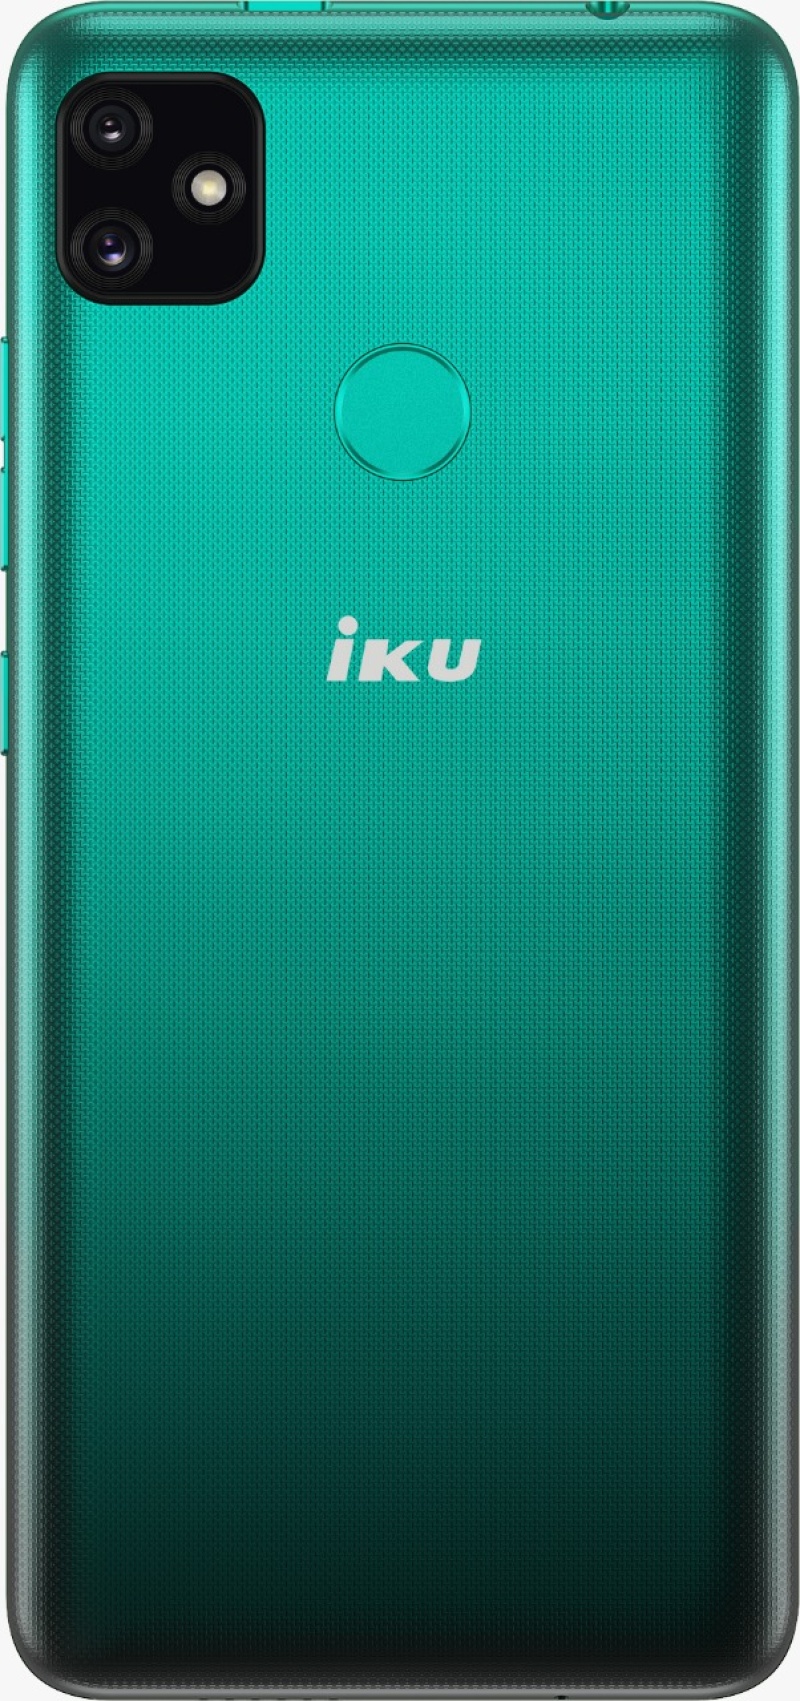 IKU-A23-Forest green